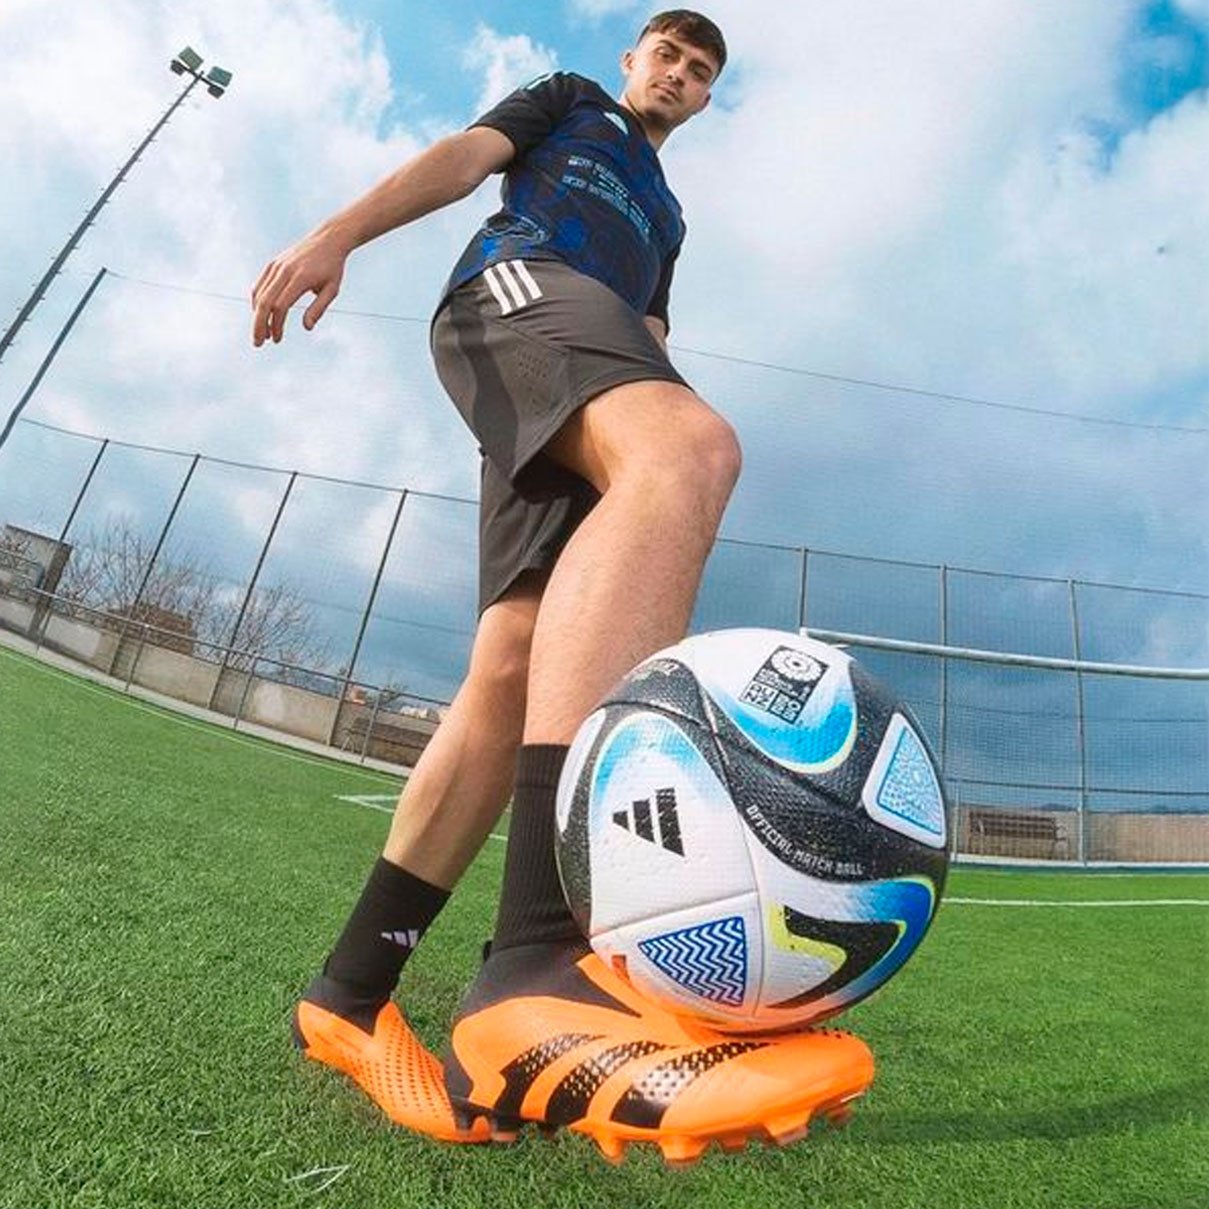 Мяч футбольный adidas Oceaunz Pro - Официальный мяч ЧМ по футболу среди женщин FIFA 2023